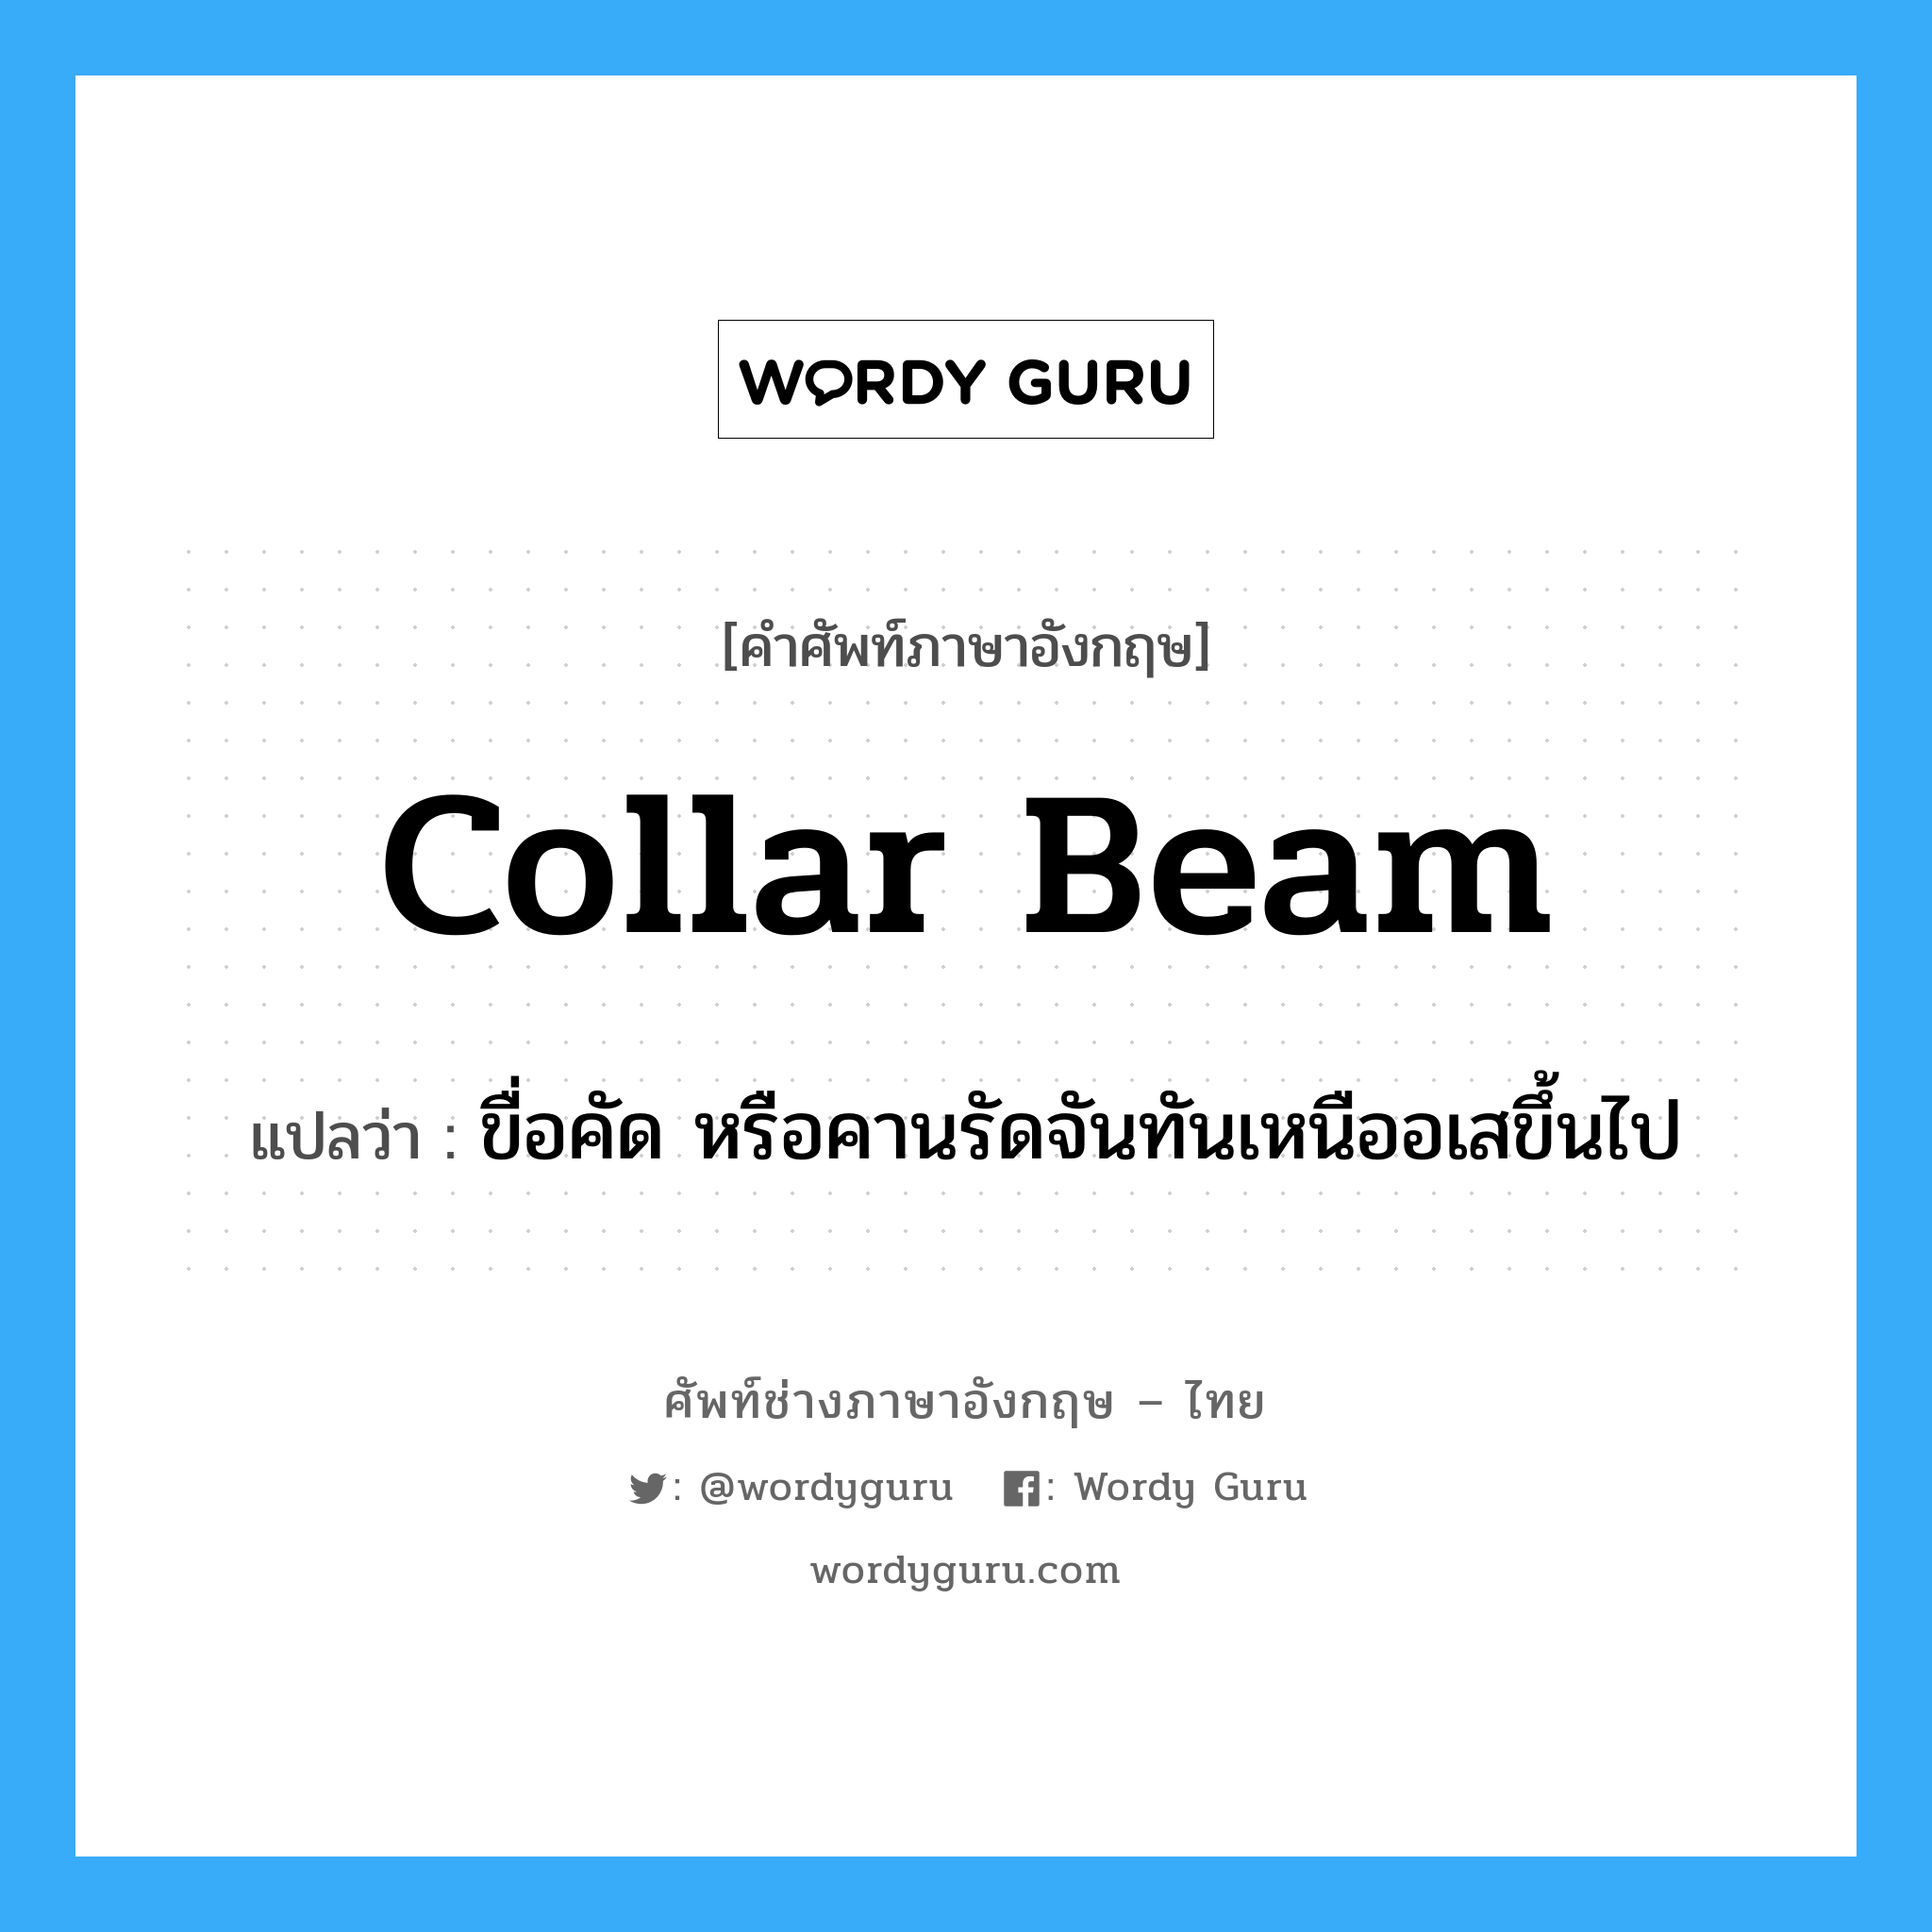 collar-beam แปลว่า?, คำศัพท์ช่างภาษาอังกฤษ - ไทย collar beam คำศัพท์ภาษาอังกฤษ collar beam แปลว่า ขื่อคัด หรือคานรัดจันทันเหนืออเสขึ้นไป